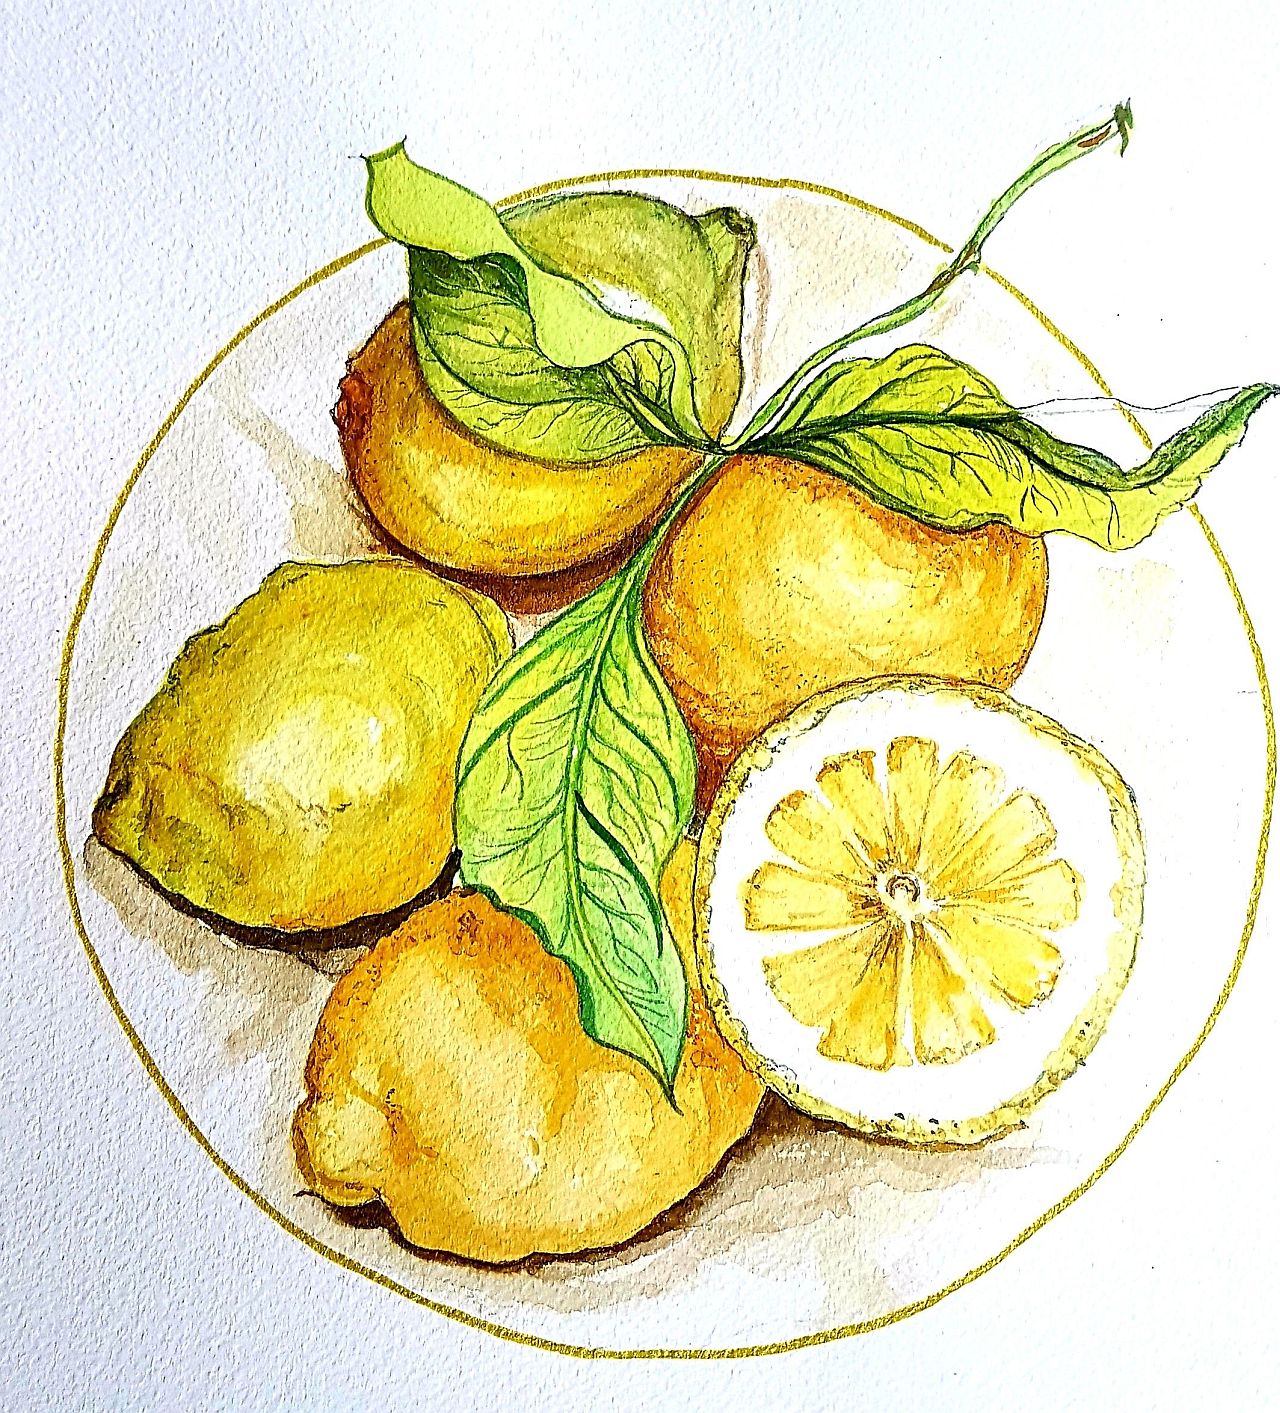 Zitronen - Das Aquarell zeigt fünf leuchtend gelbe Zitrone mit runzeliger Schale, eine davon halbiert, mit drei Blättern auf einem angedeuteten Teller